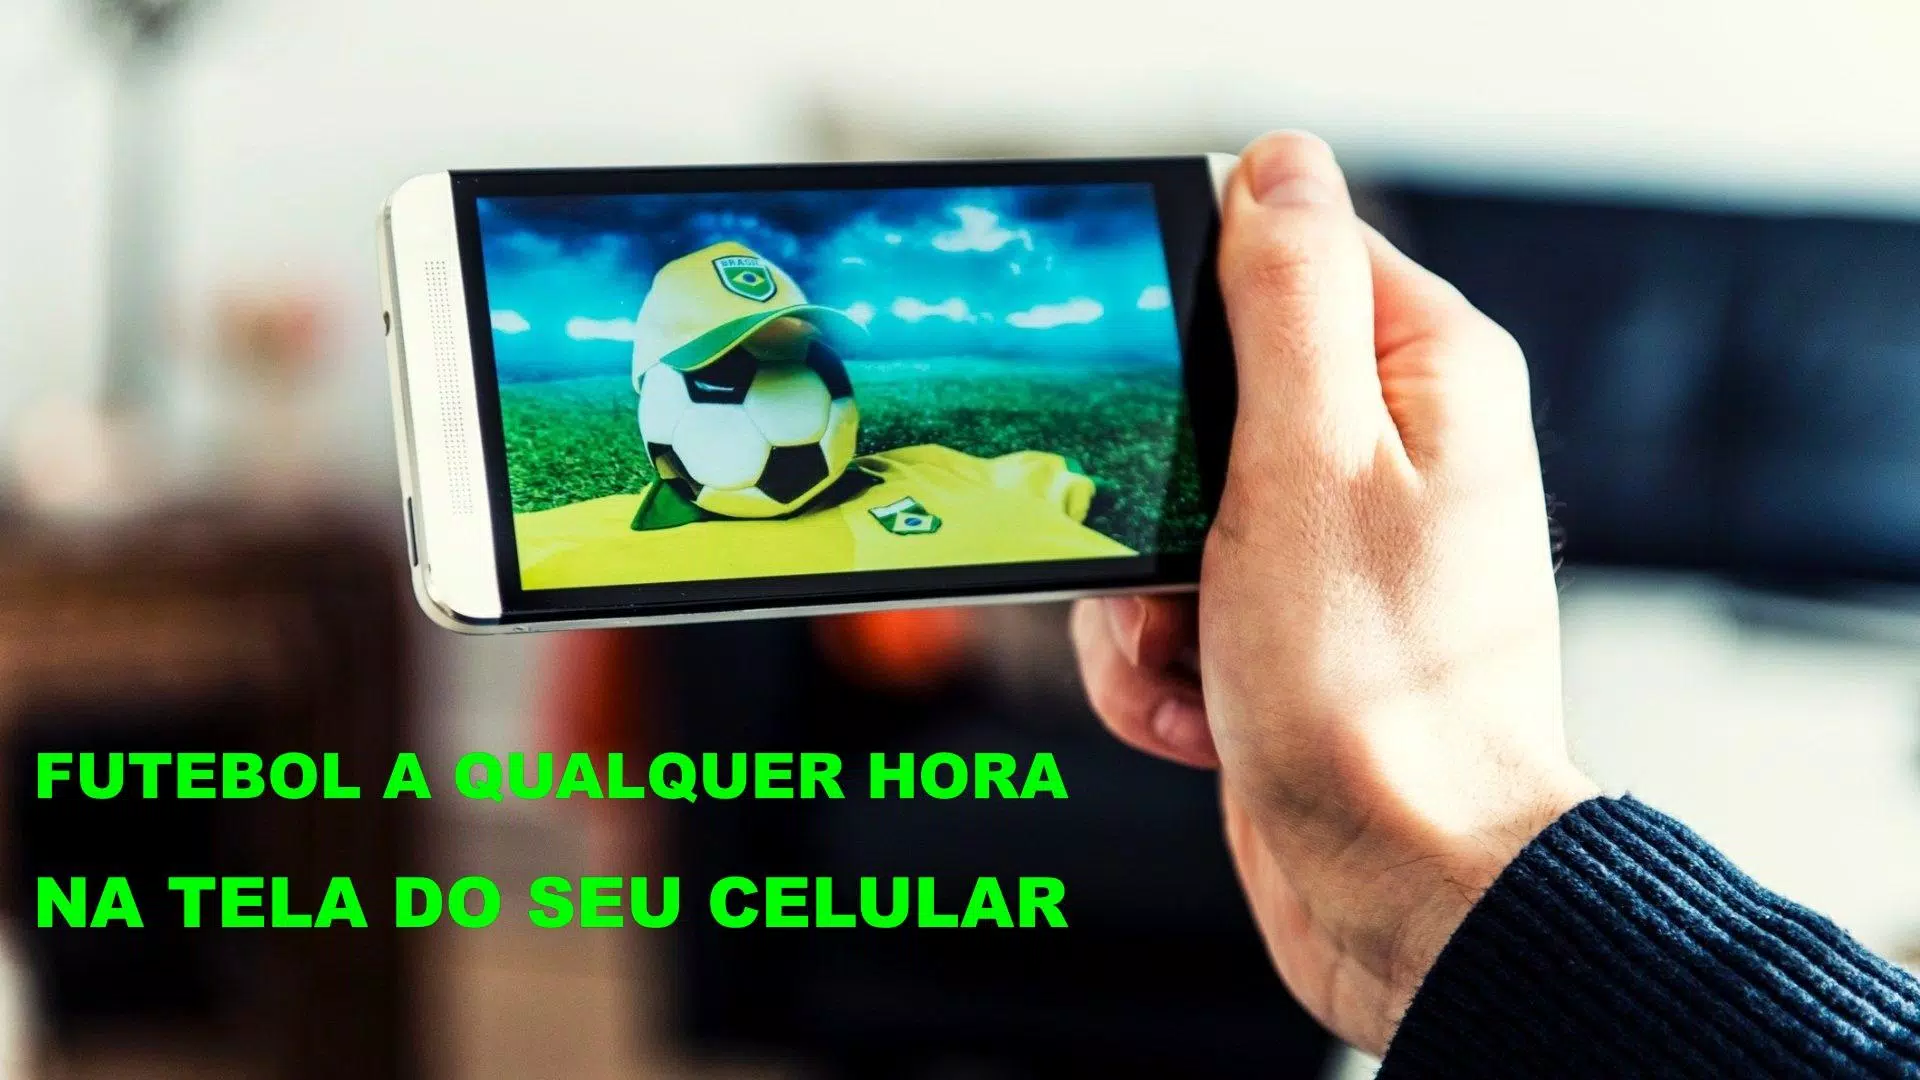 Futebol ao vivo online no celular e tablet